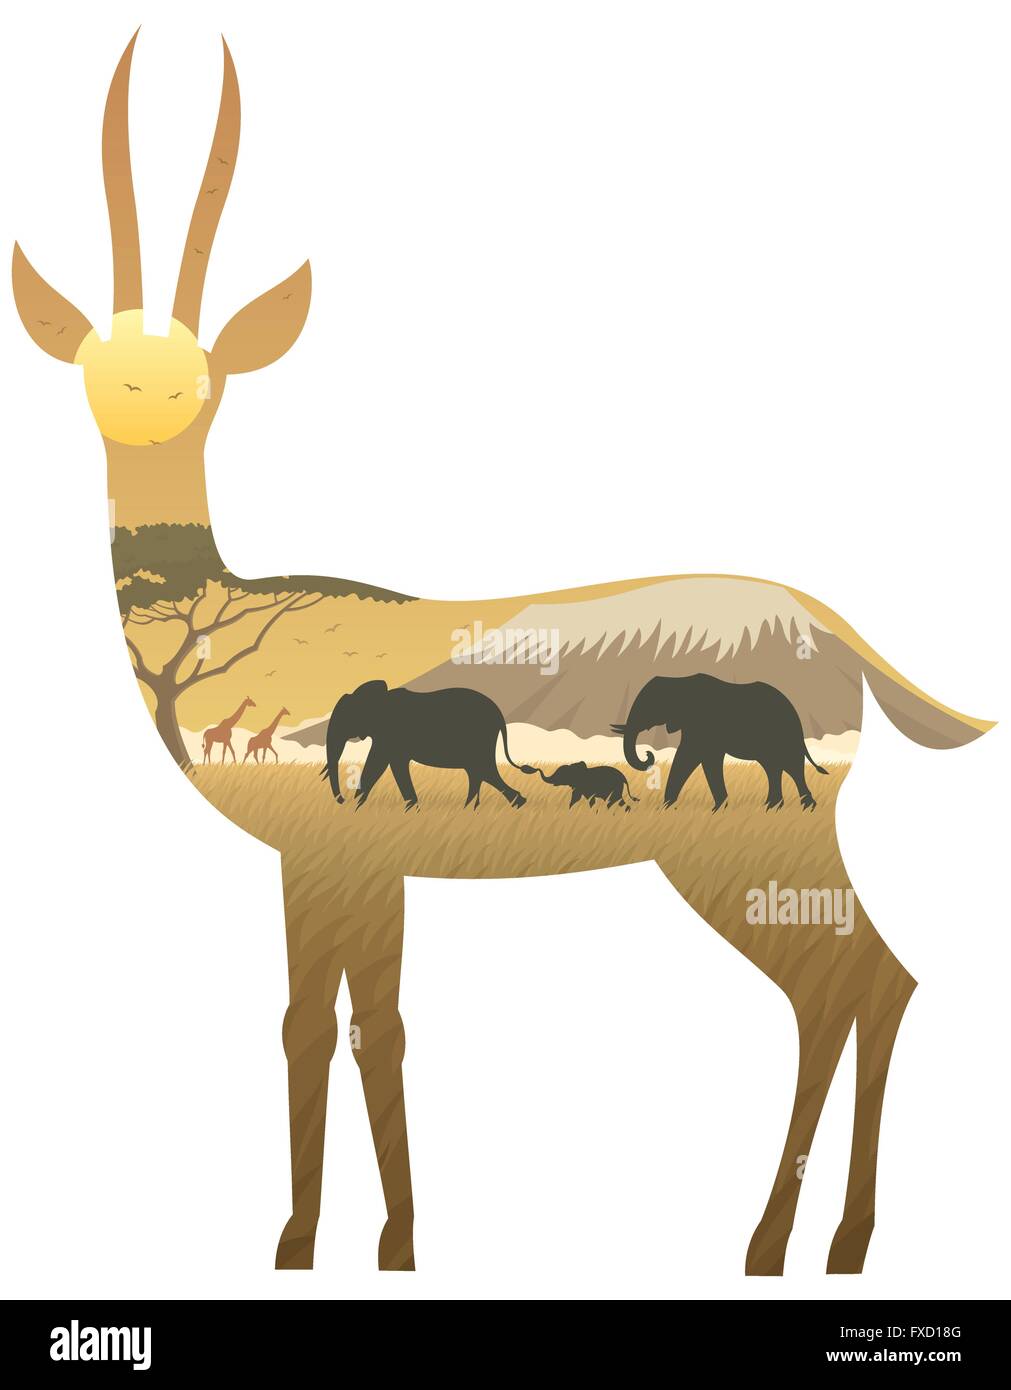 Paysage africain en silhouette de gazelle. Pas de transparence utilisés. Les gradients de base (linéaire) utilisé. Illustration de Vecteur